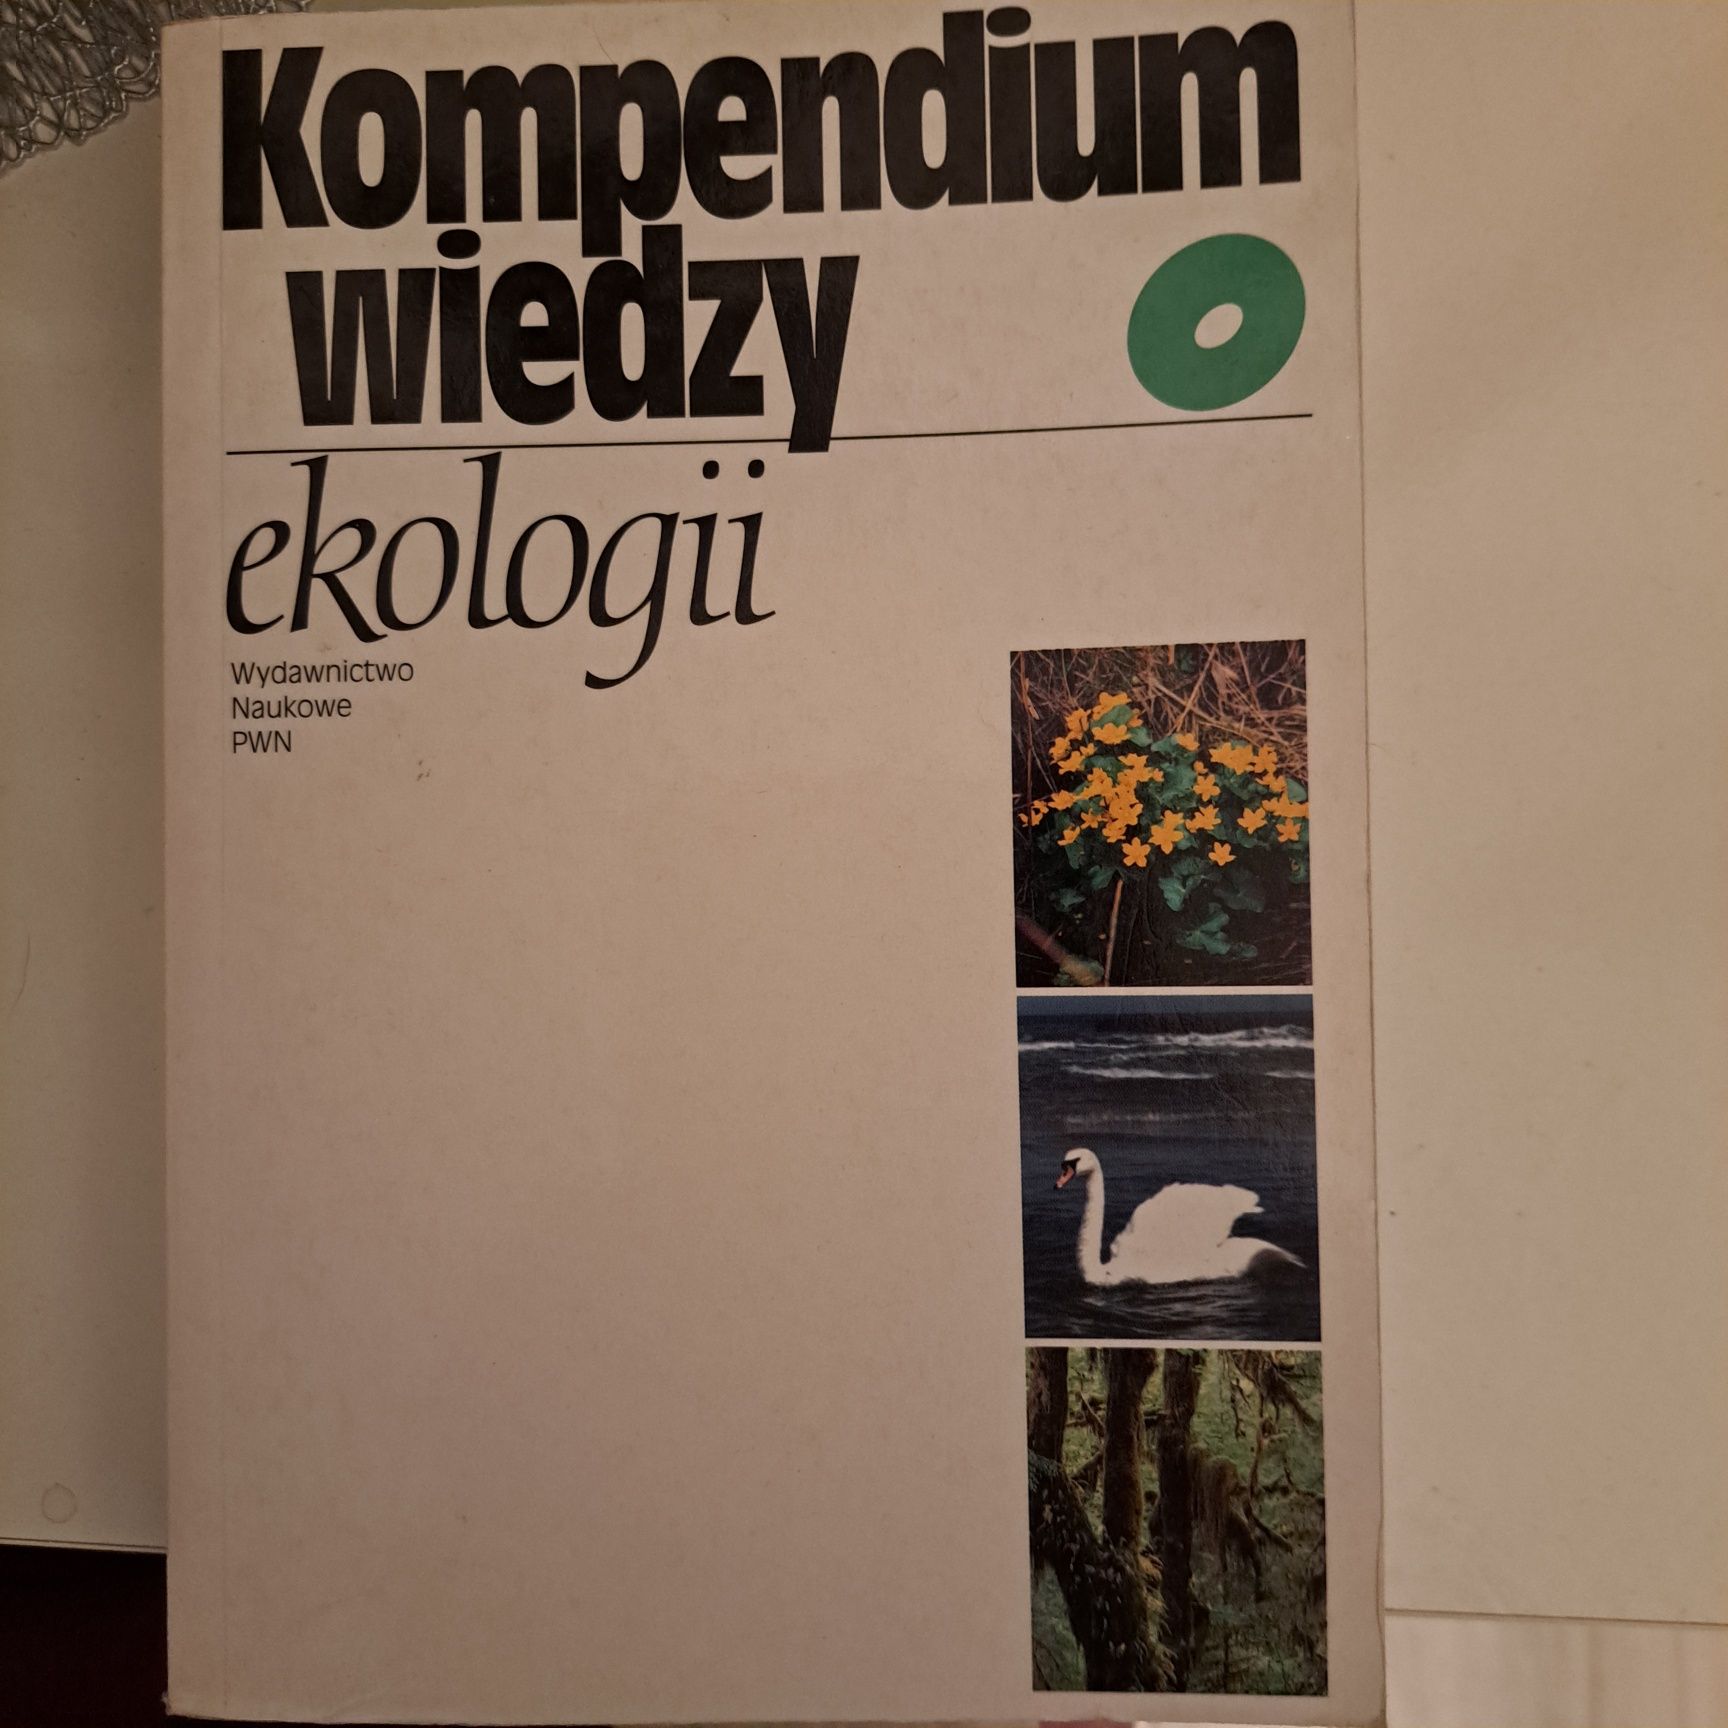 Kompendium wiedzy o ekologii